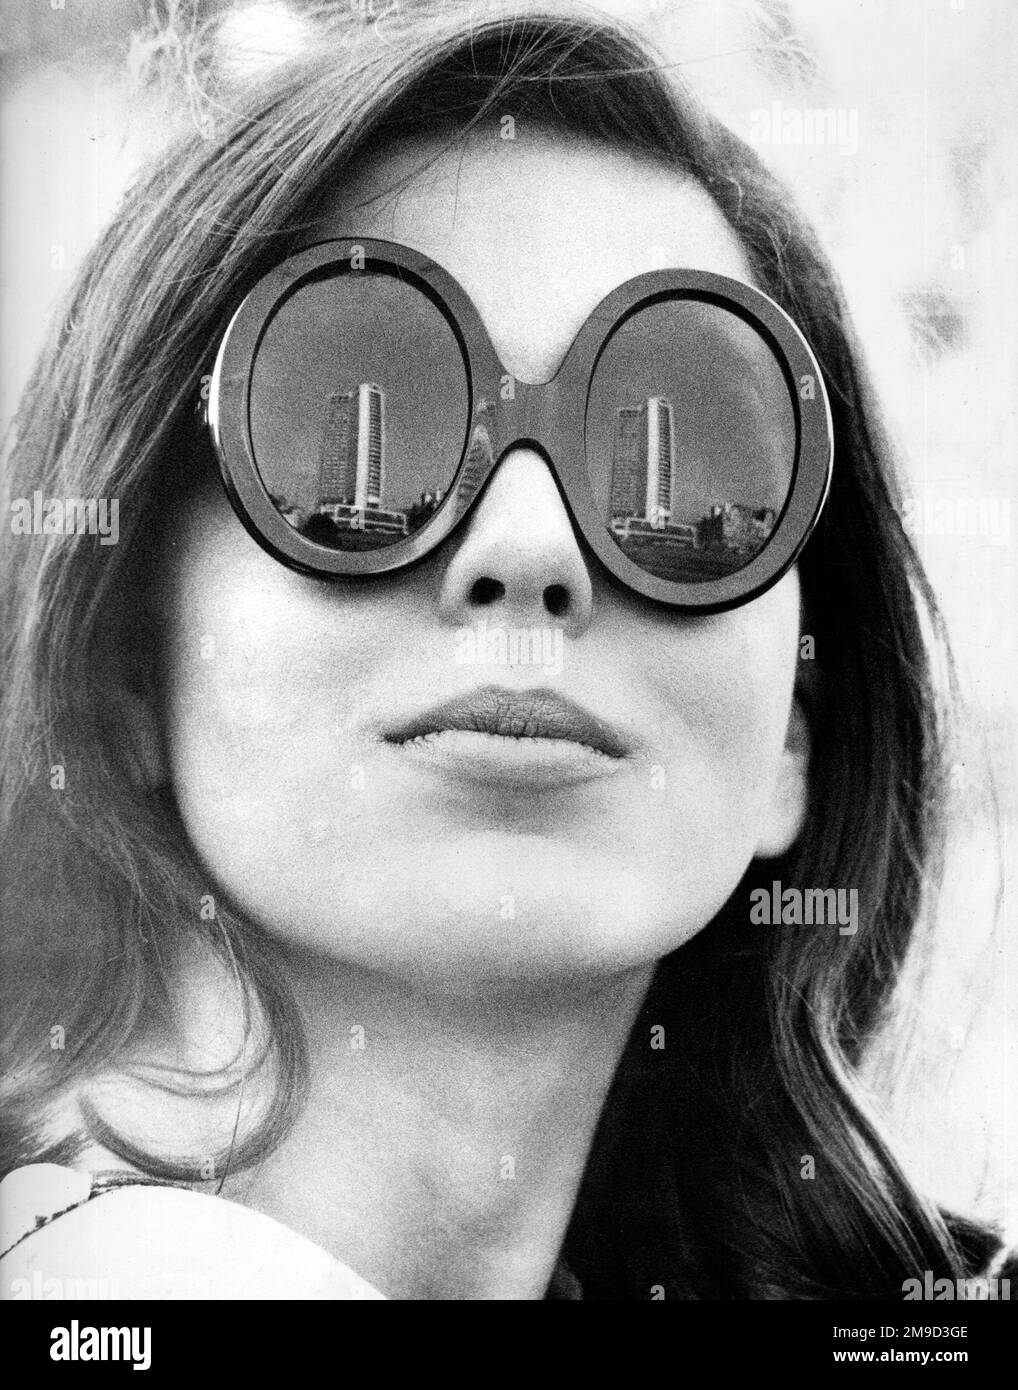 Weibliches Model trägt eine Sonnenbrille mit dickem Rahmen, wobei sich ein Wolkenkratzer-Gebäude in den Gläsern spiegelt. Stockfoto